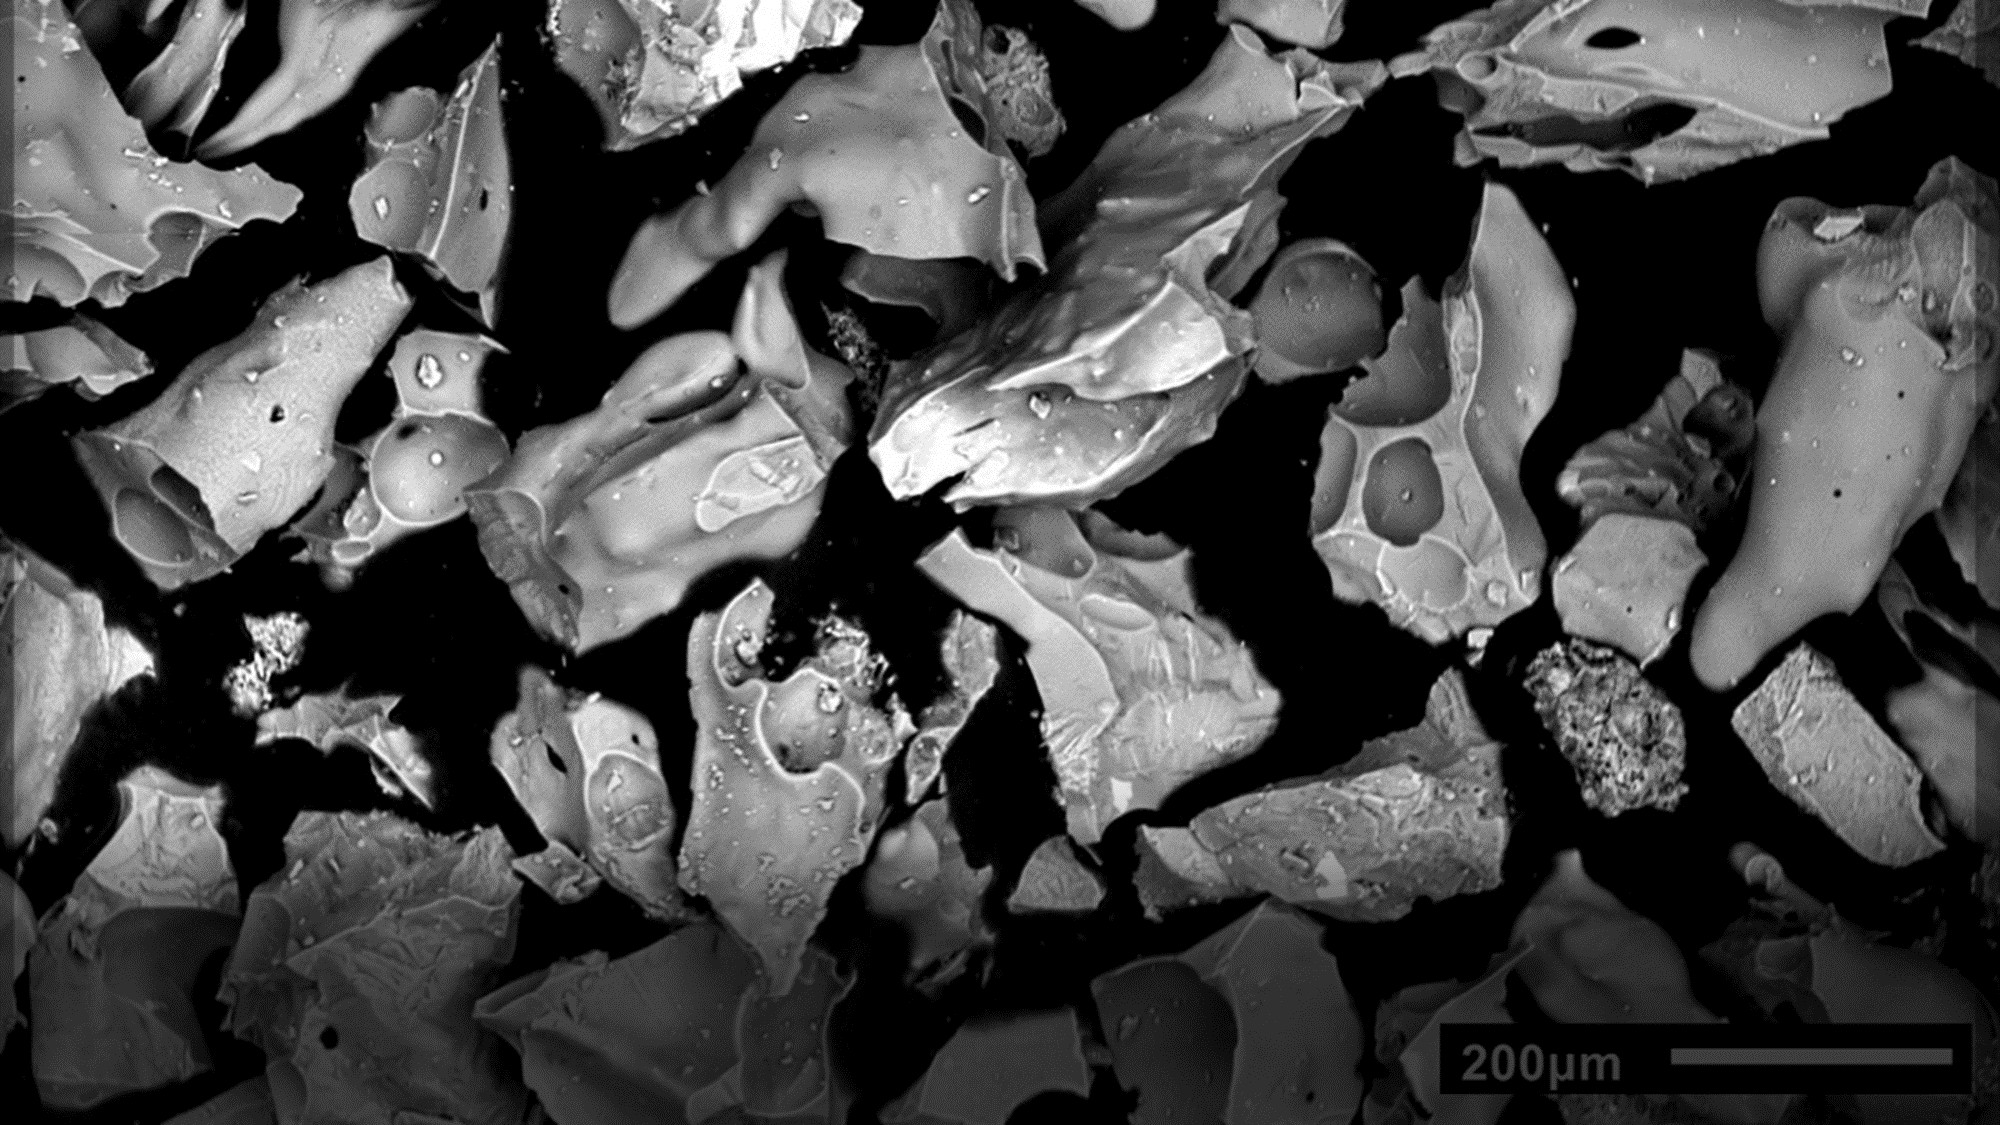 Fotografía de microscopio electrónico de barrido donde se observa la morfología de detalle de las partículas de cenizas expulsadas el primer día de la erupción